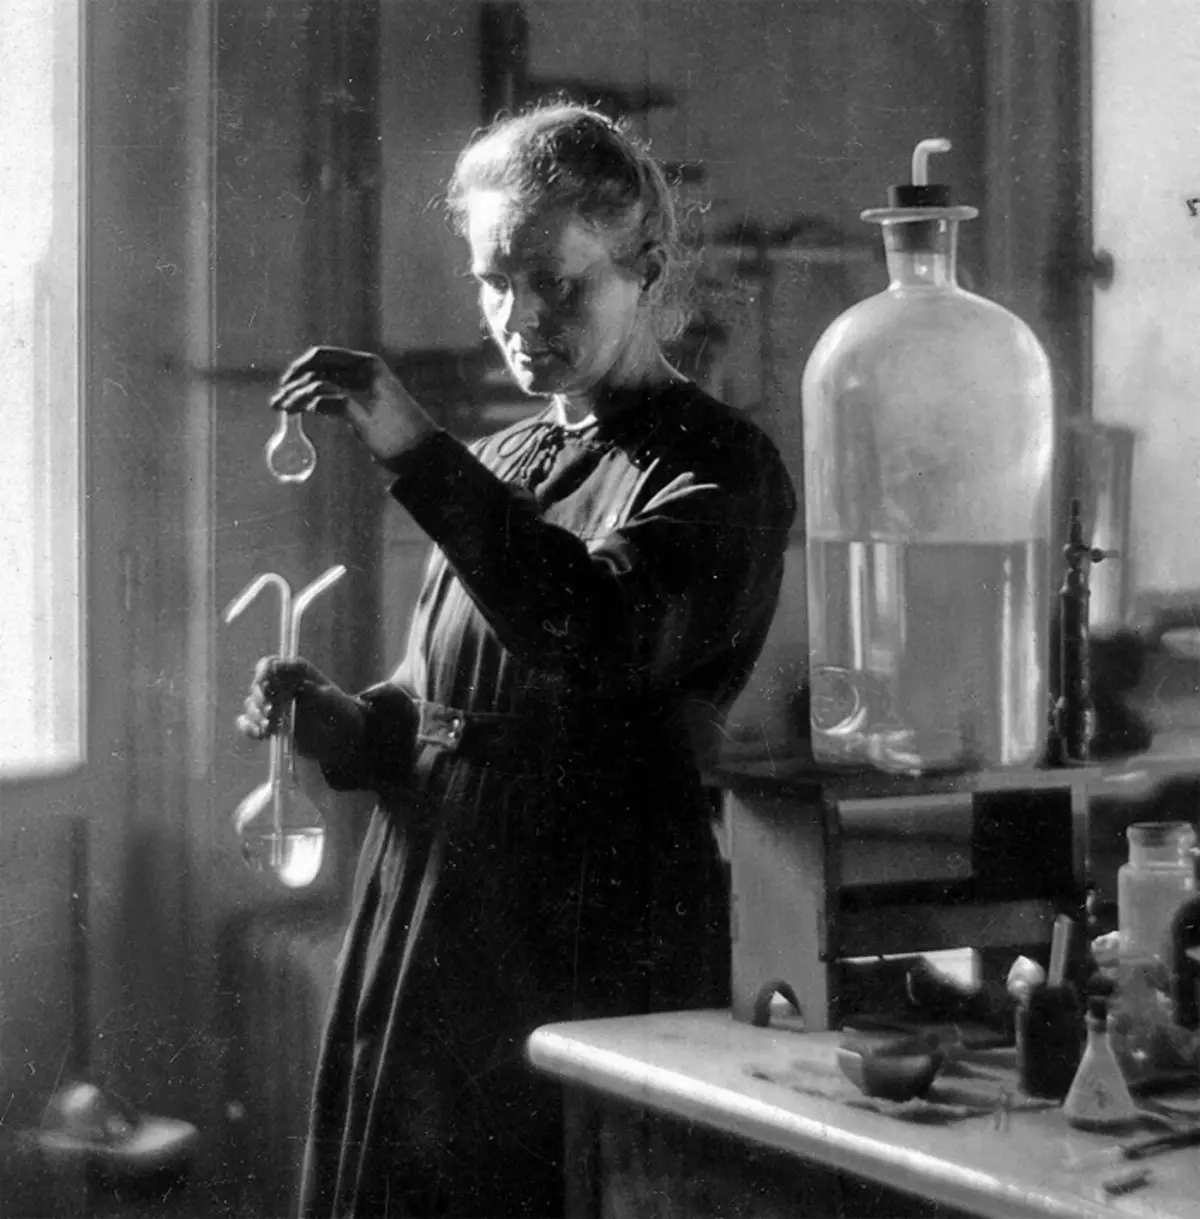 Förutom forsknings- och undervisningsarbetet konsulterade Curie läkare